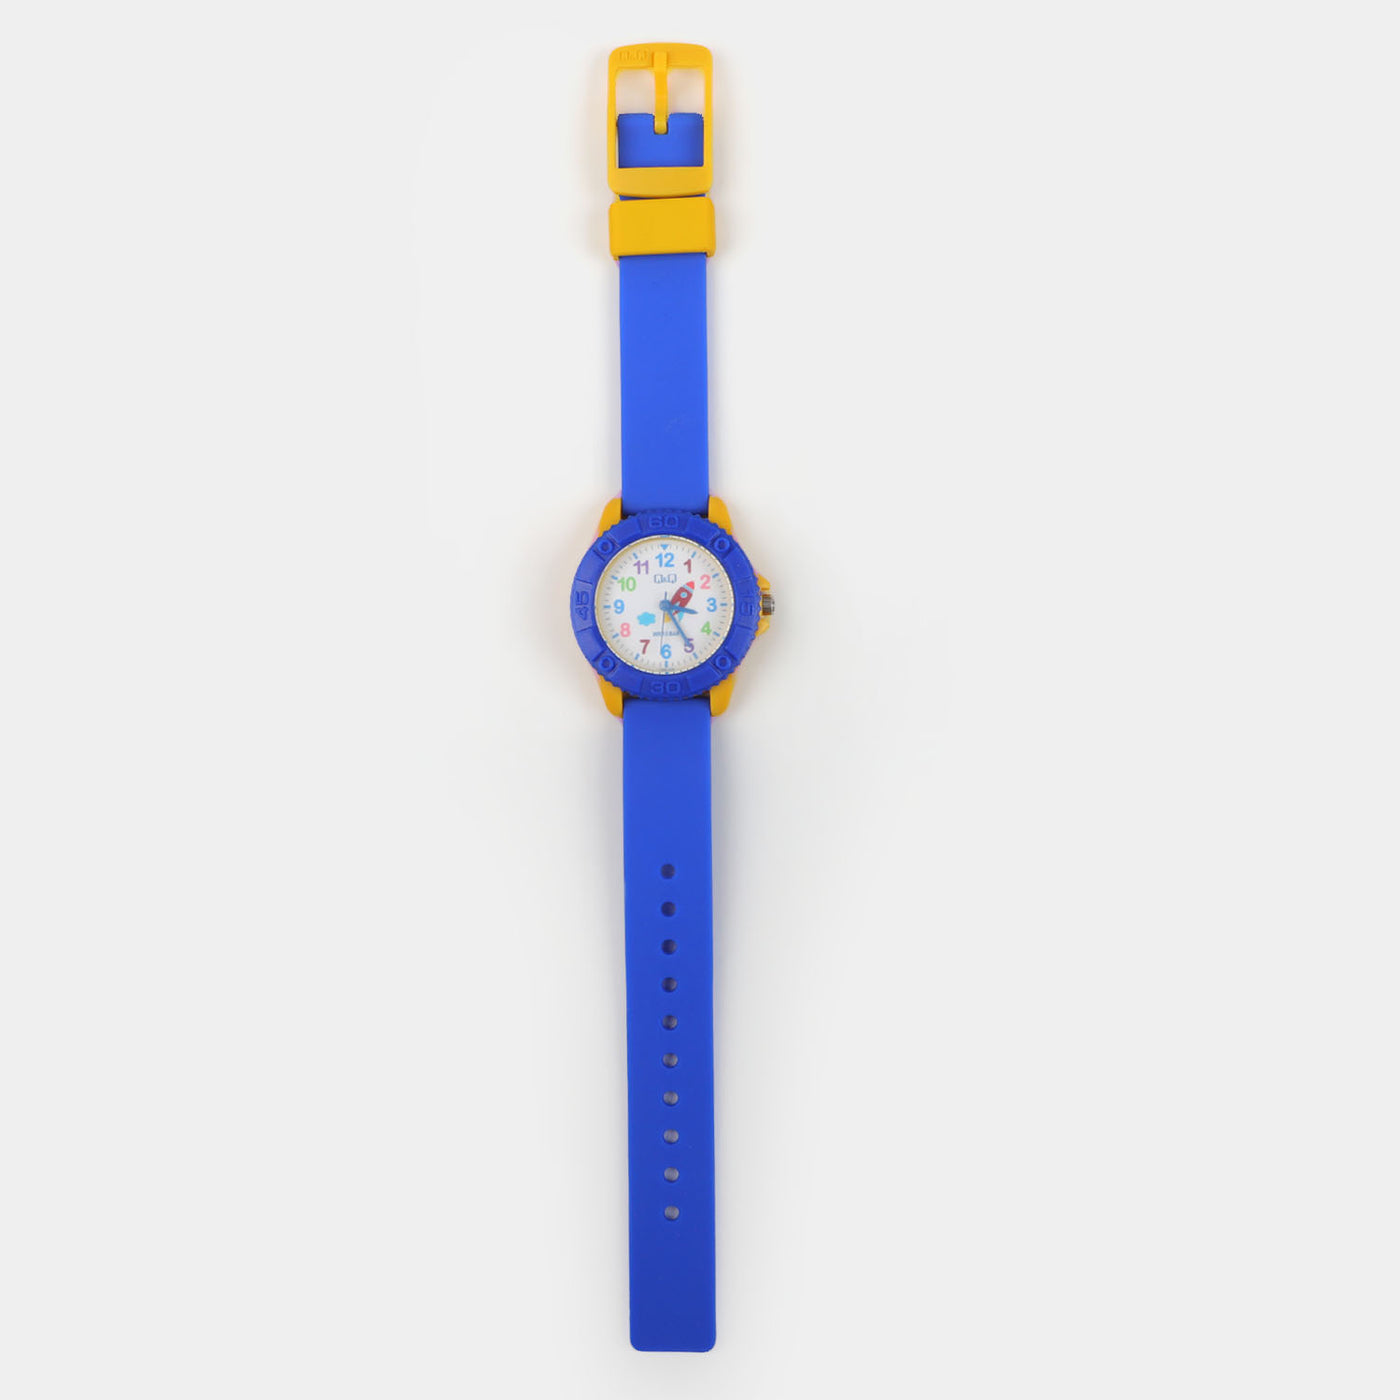 Analog Wrist Watch PVC For Kids